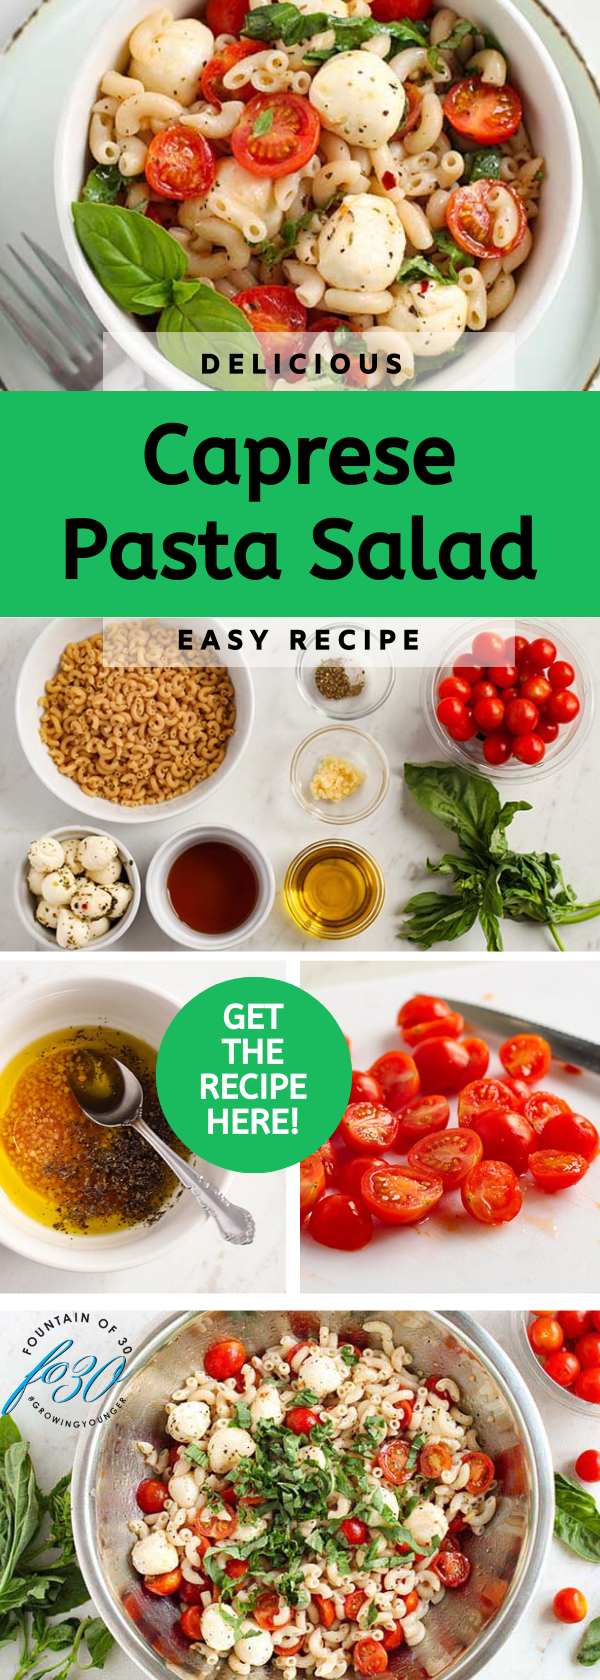 easy caprese pasta salad recipe fountainof30